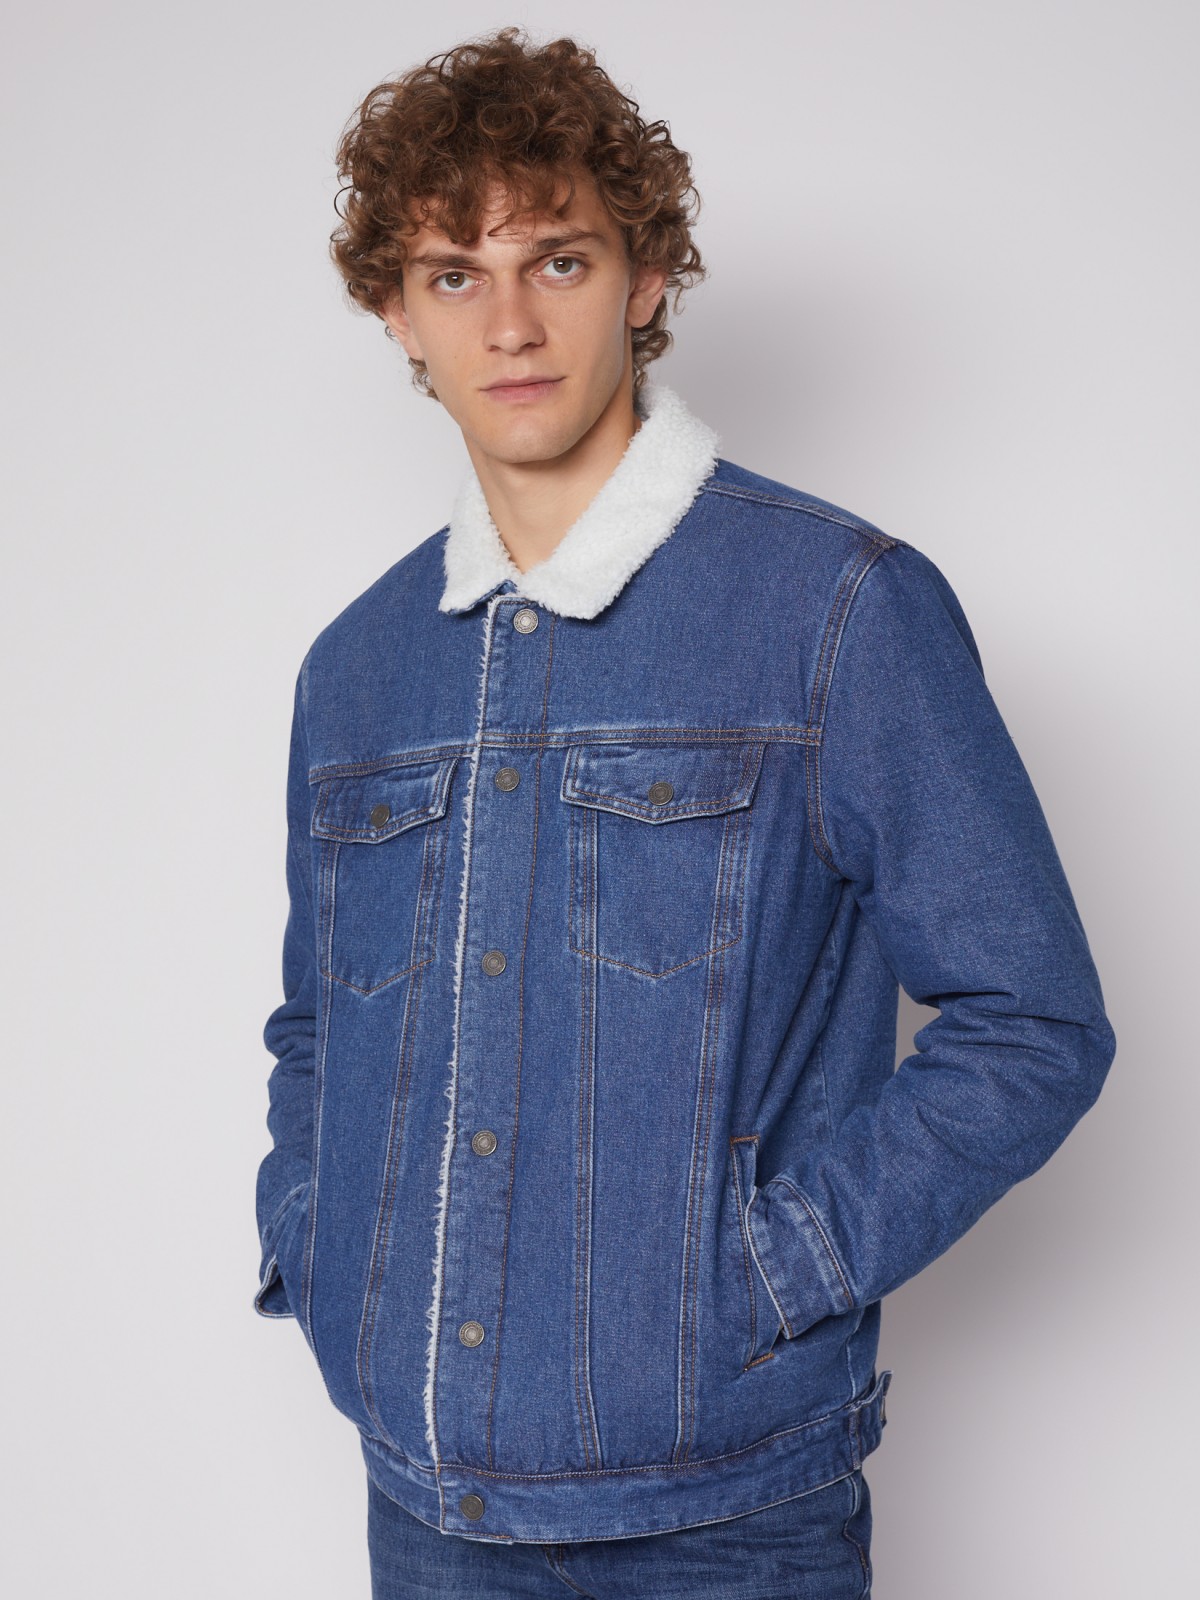 Утеплённая джинсовая куртка 012335W4S014, цвет Голубой, артикул012335W4S014 - купить в интернет-магазине ZOLLA по цене: 2 499 ₽